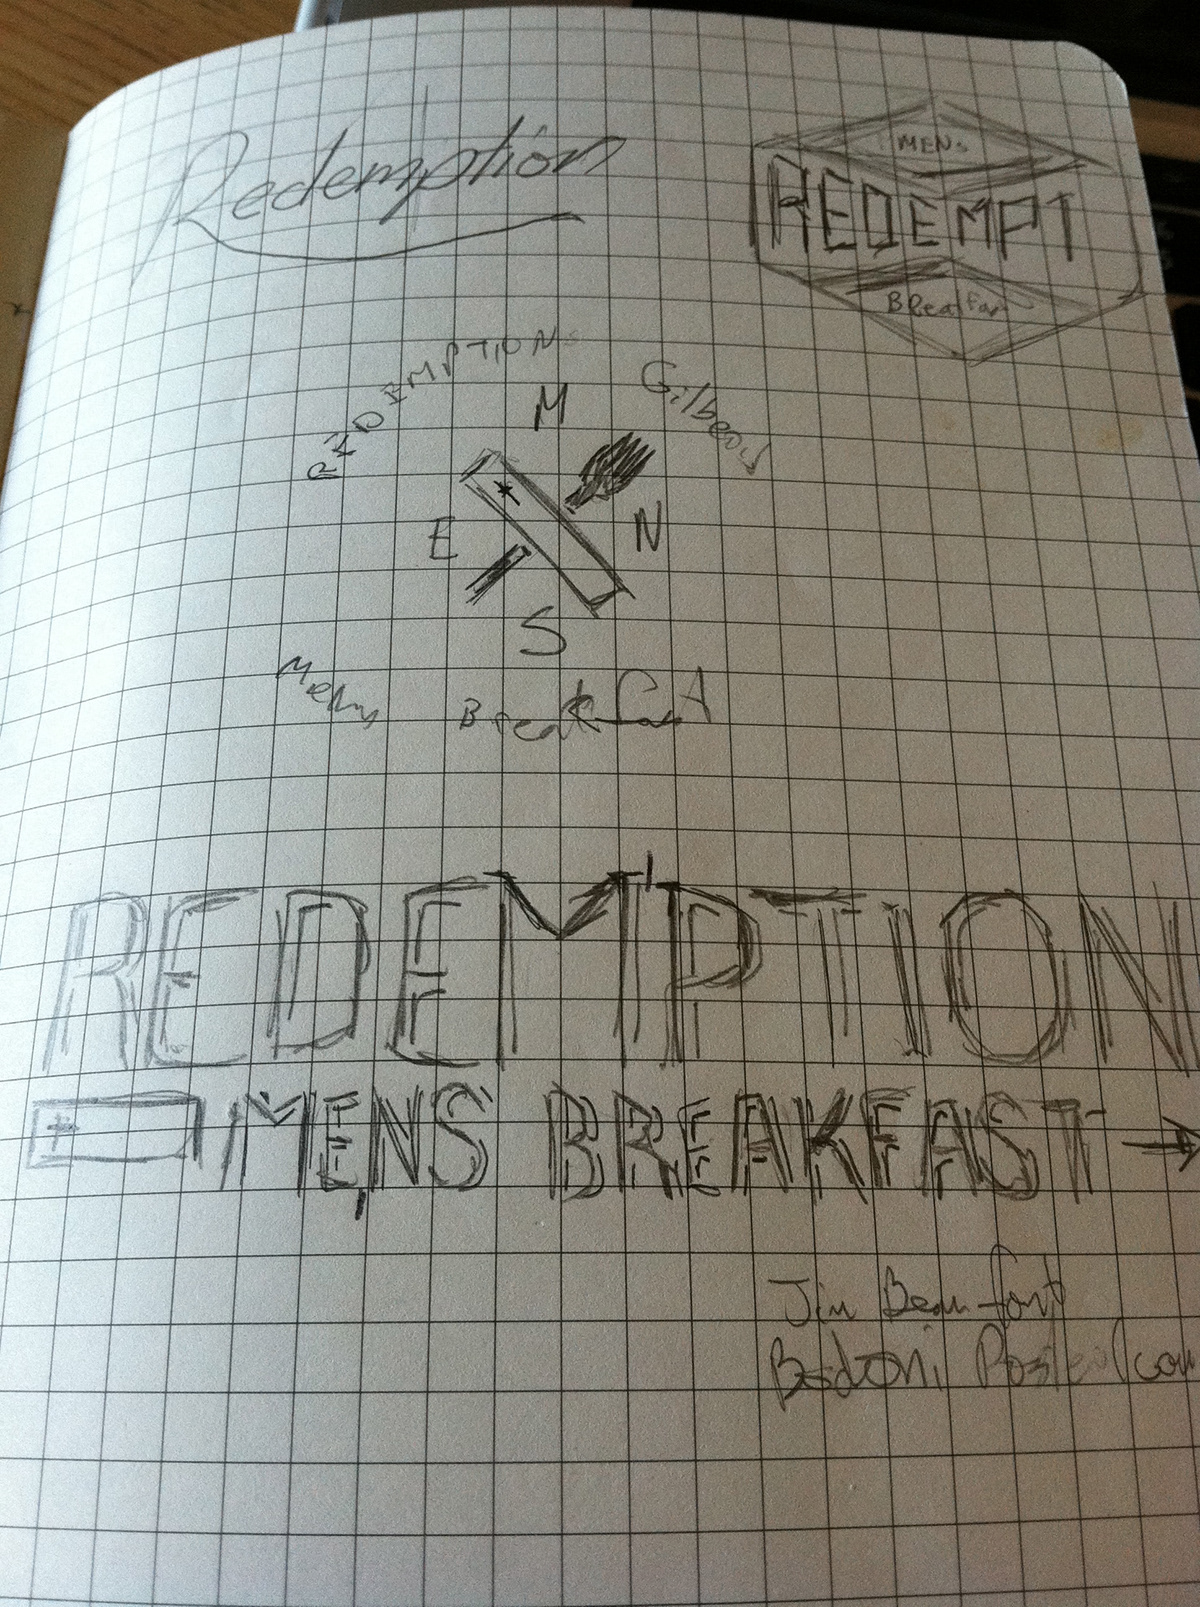 breakfast men logo